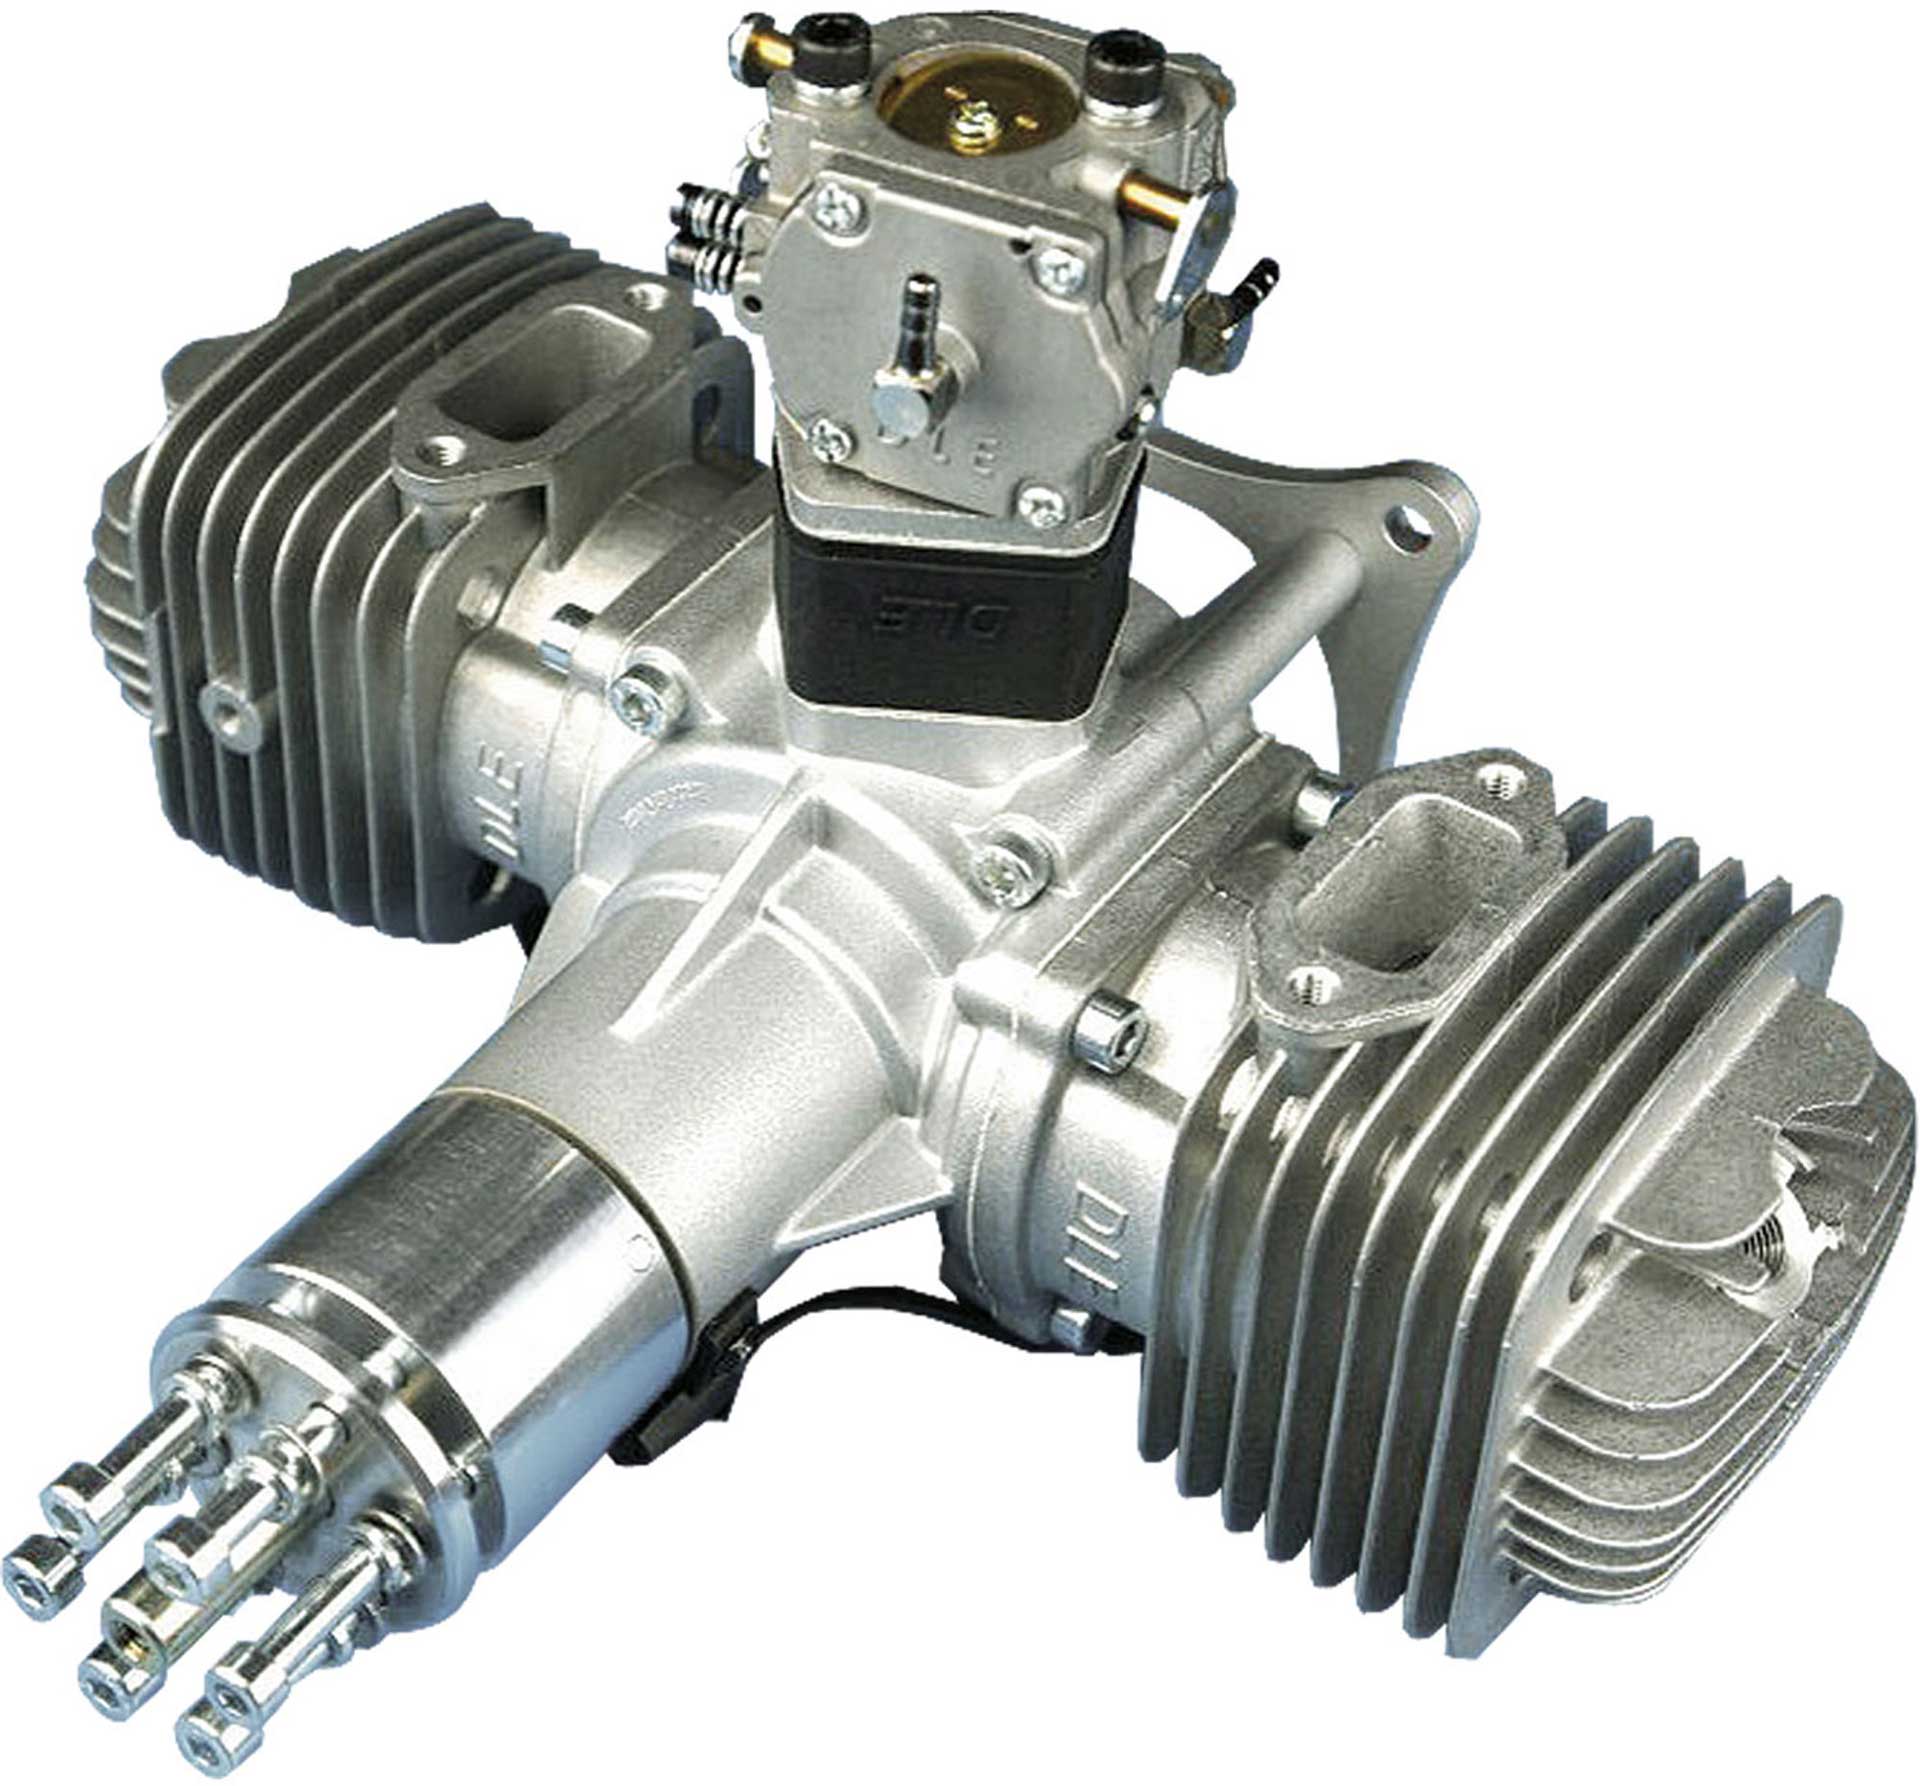 DLE Engines DLE 120 2-cylinder gasoline engine "genuine"